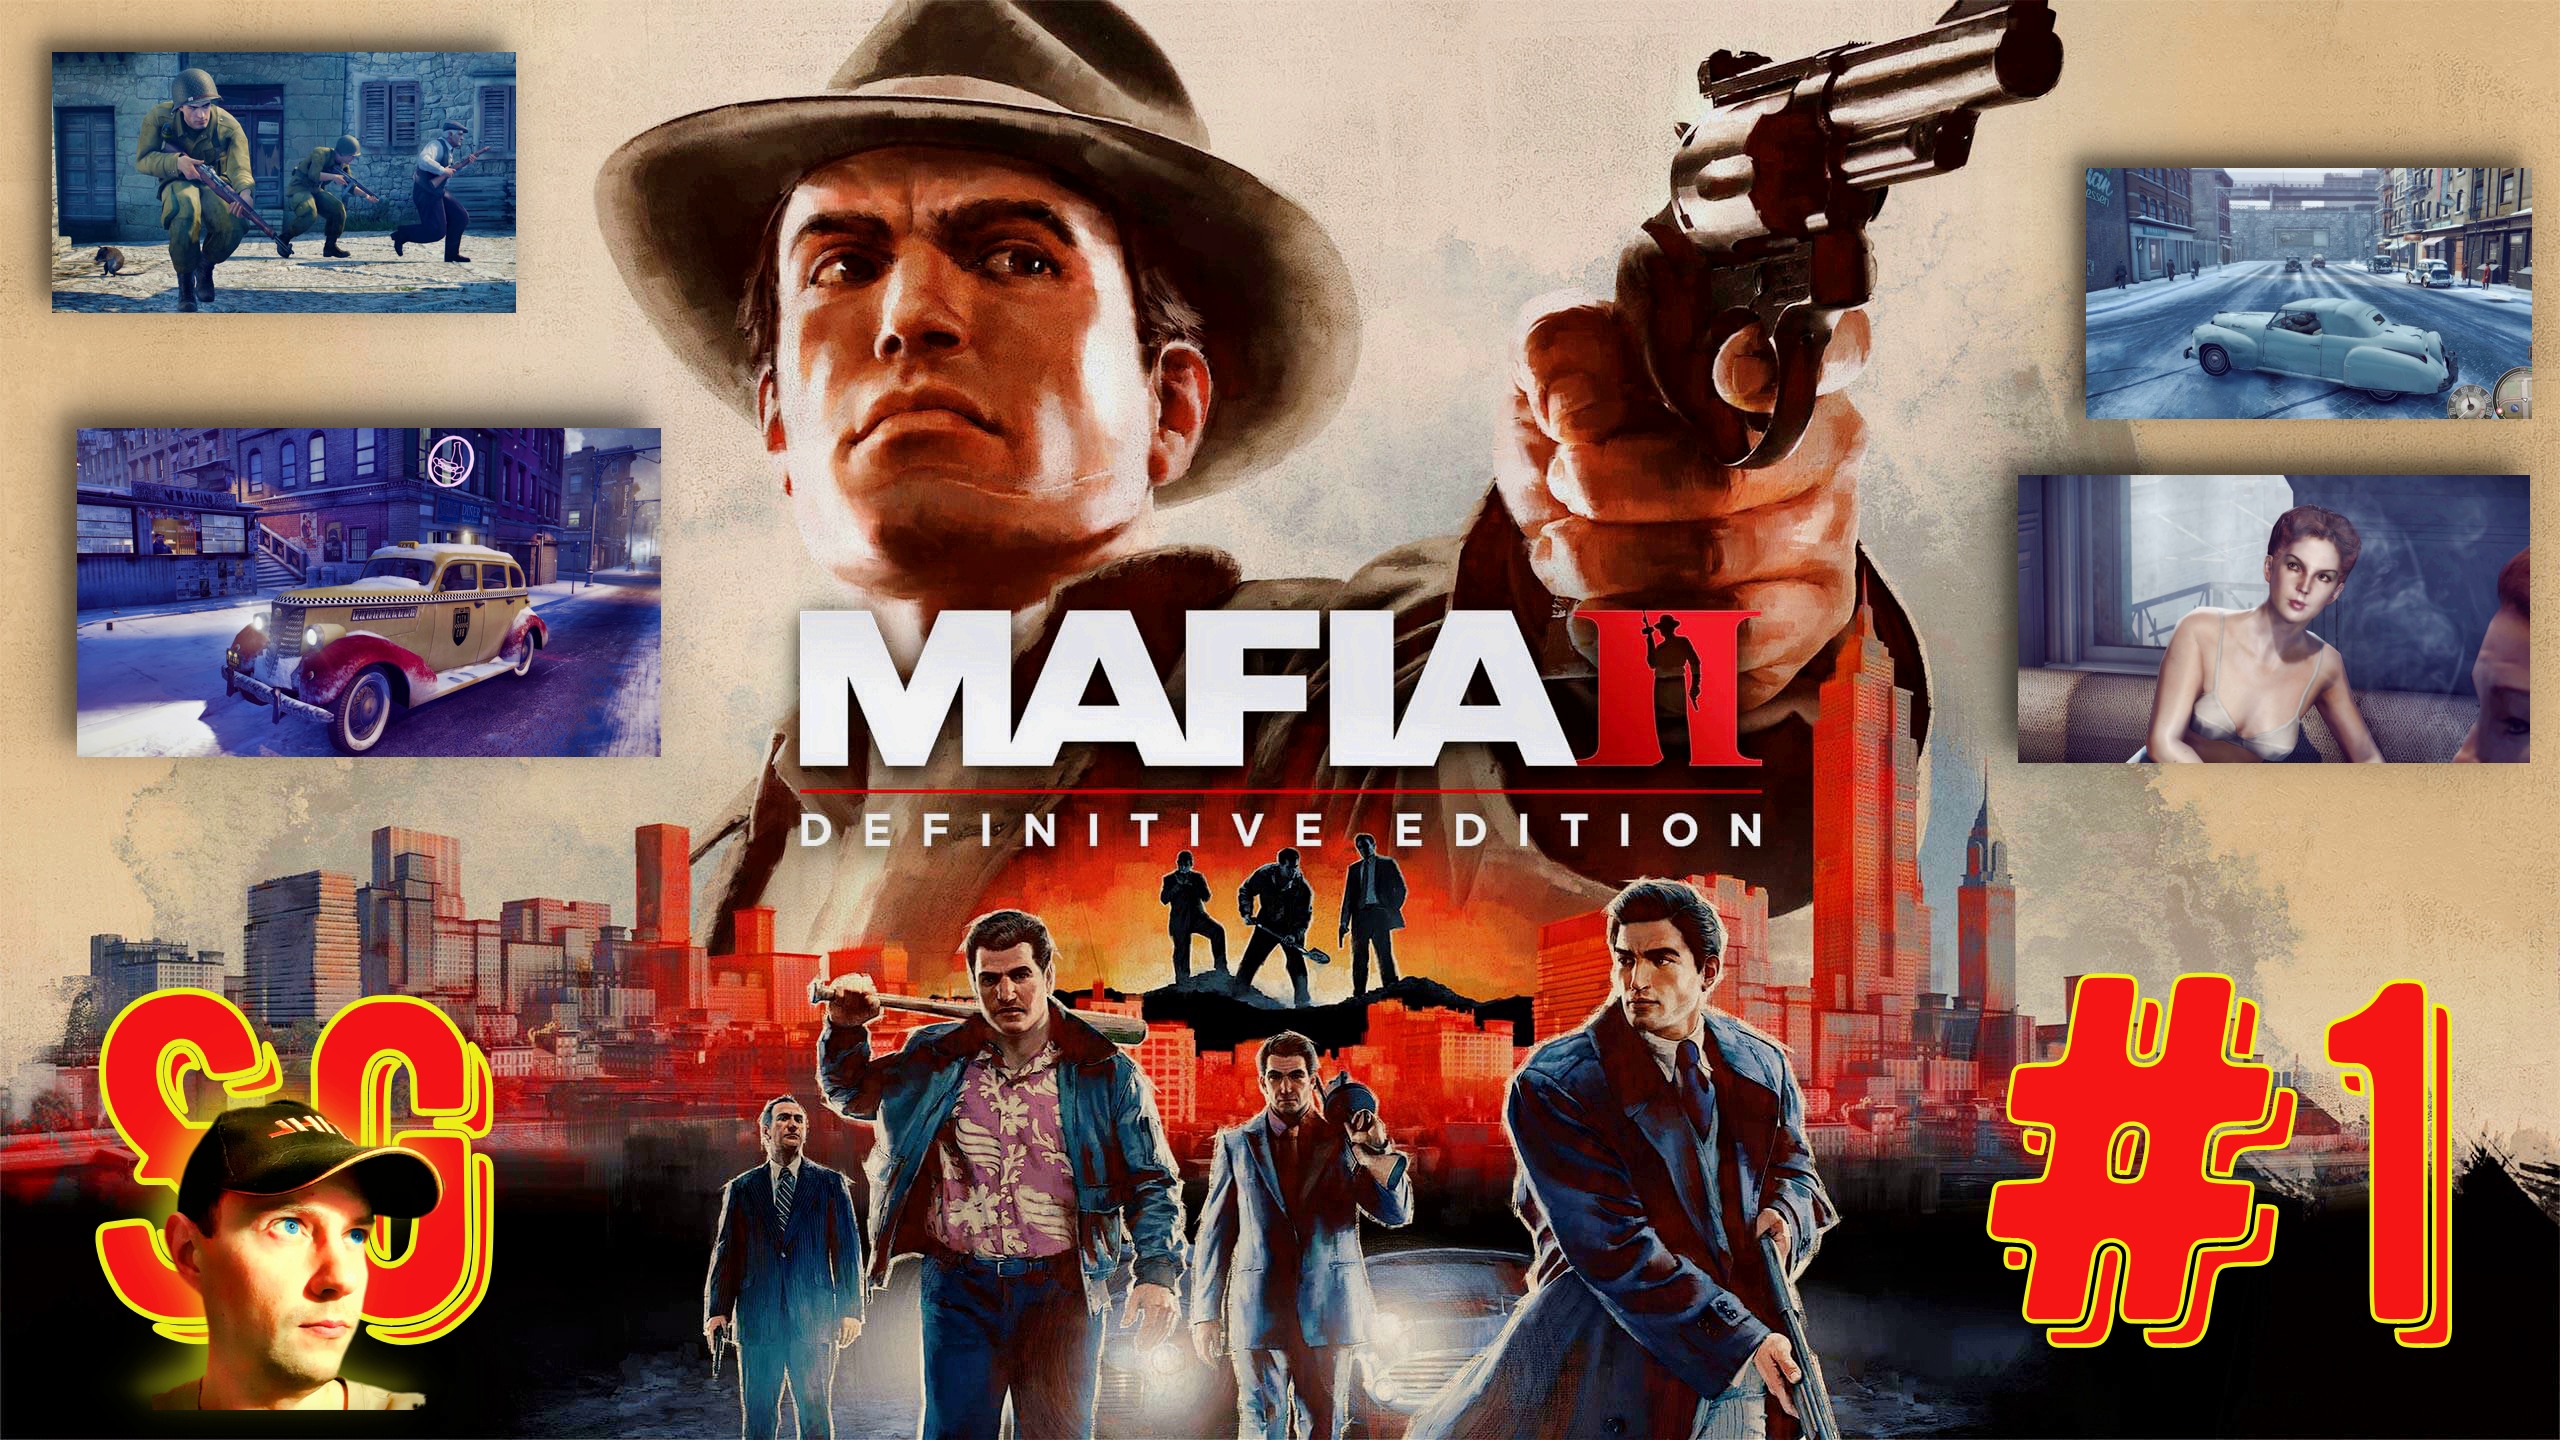 #1 МАФИЯ 2. Mafia II: Definitive Edition. Прохождение. Начало. Война. Встреча со старым другом.?18+